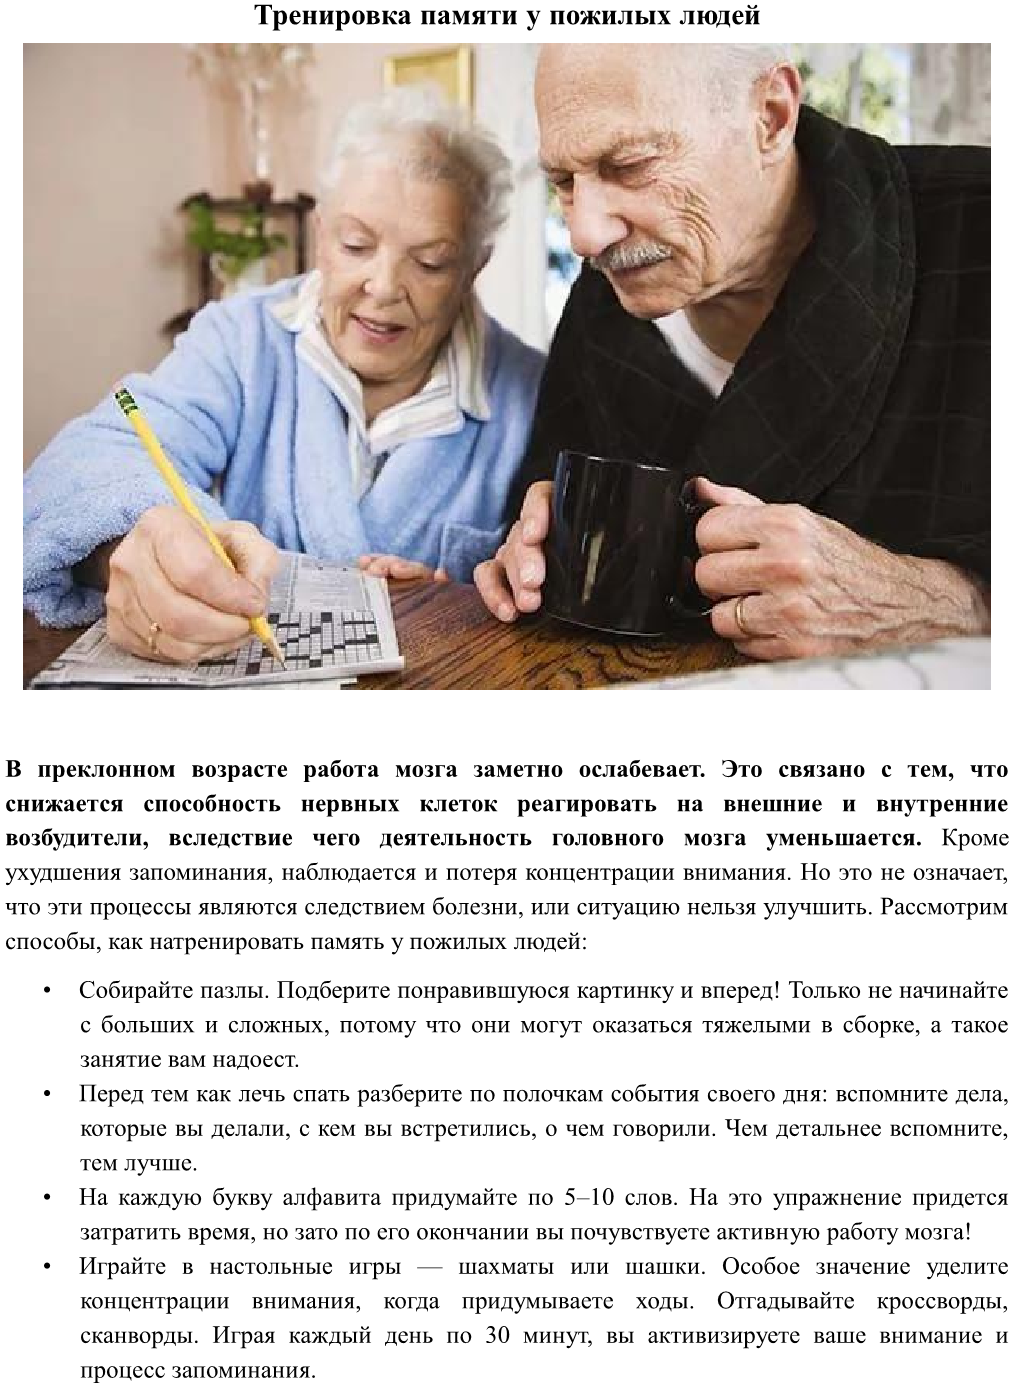 Упражнения для мозга и памяти для пожилых. Рекомендации развития памяти у пожилых. Внимание у пожилых людей. Тренировка мозга для пожилых людей. Упражнения на сохранение памяти у пожилых людей.